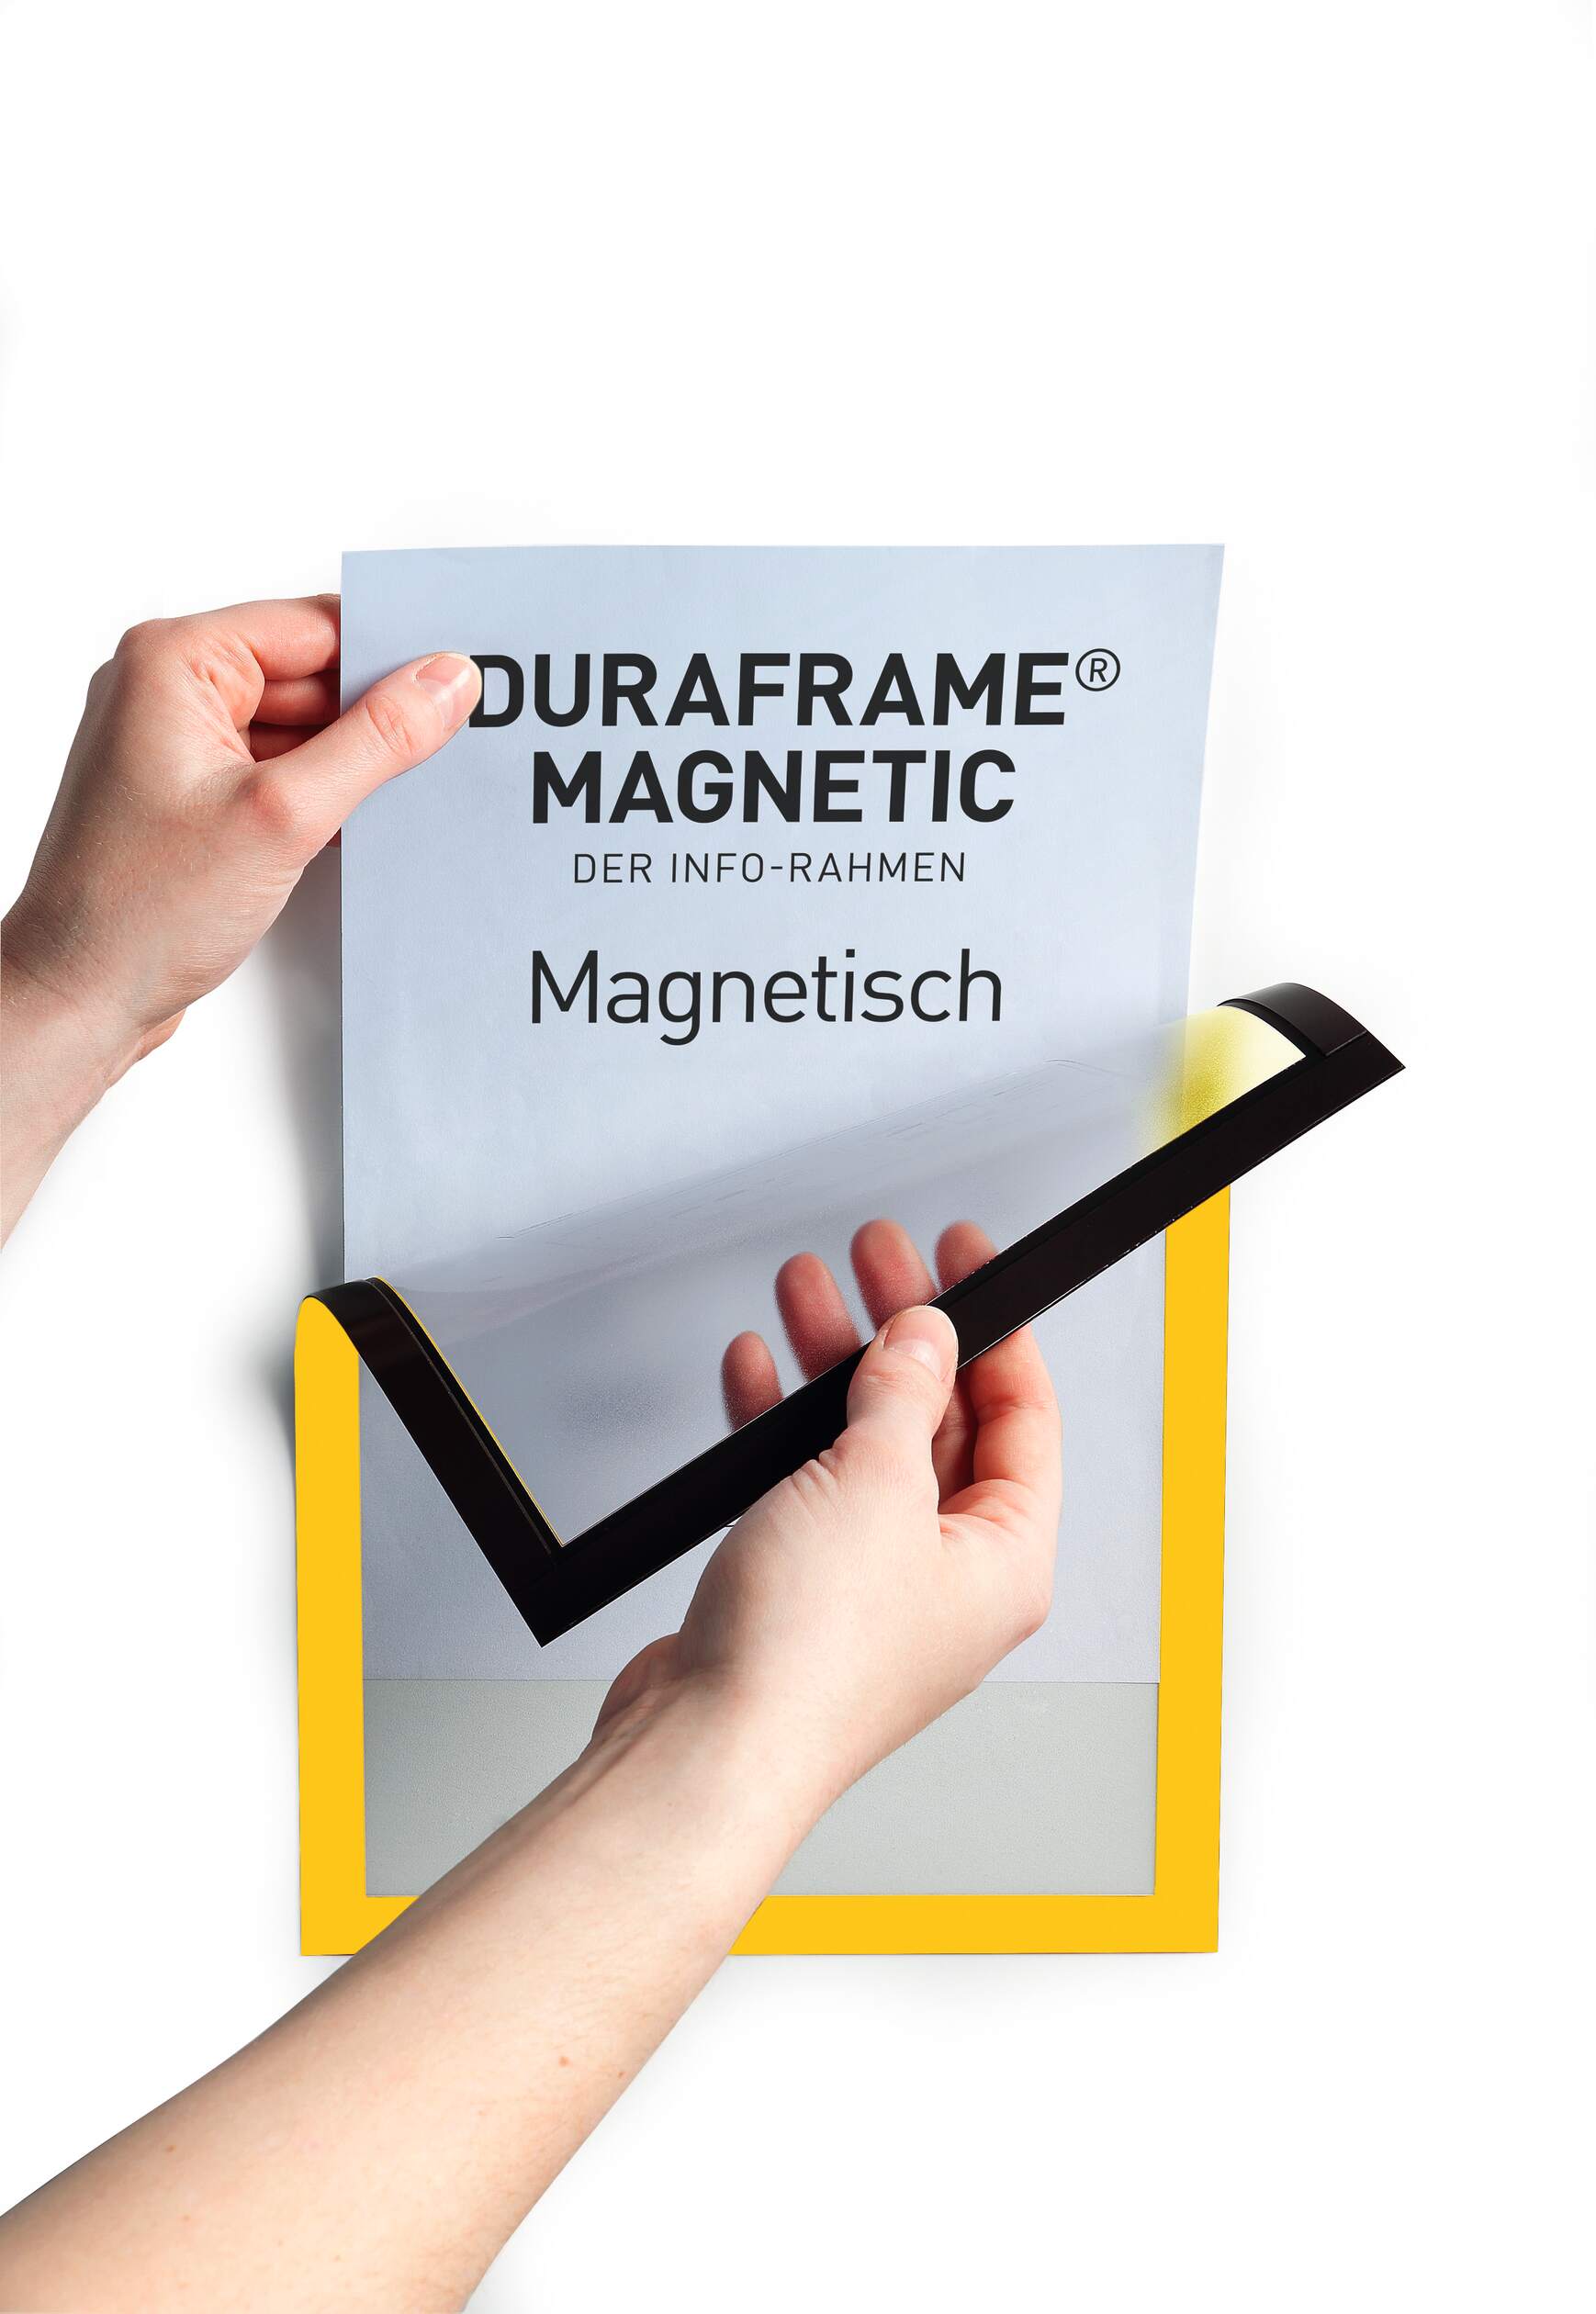 Magnetic frames